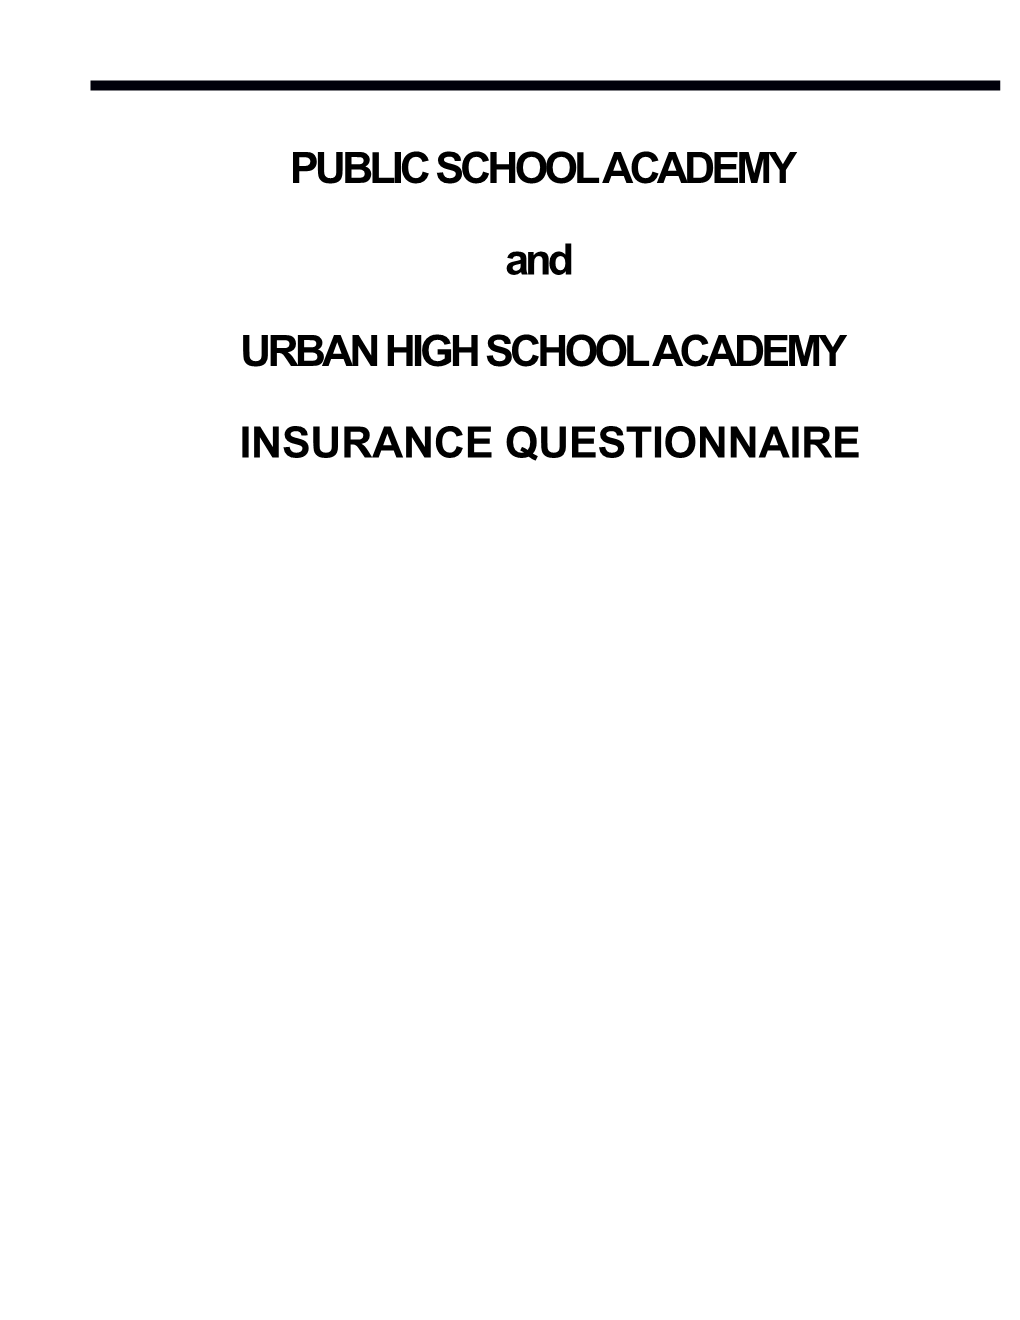 Urban High School Academy